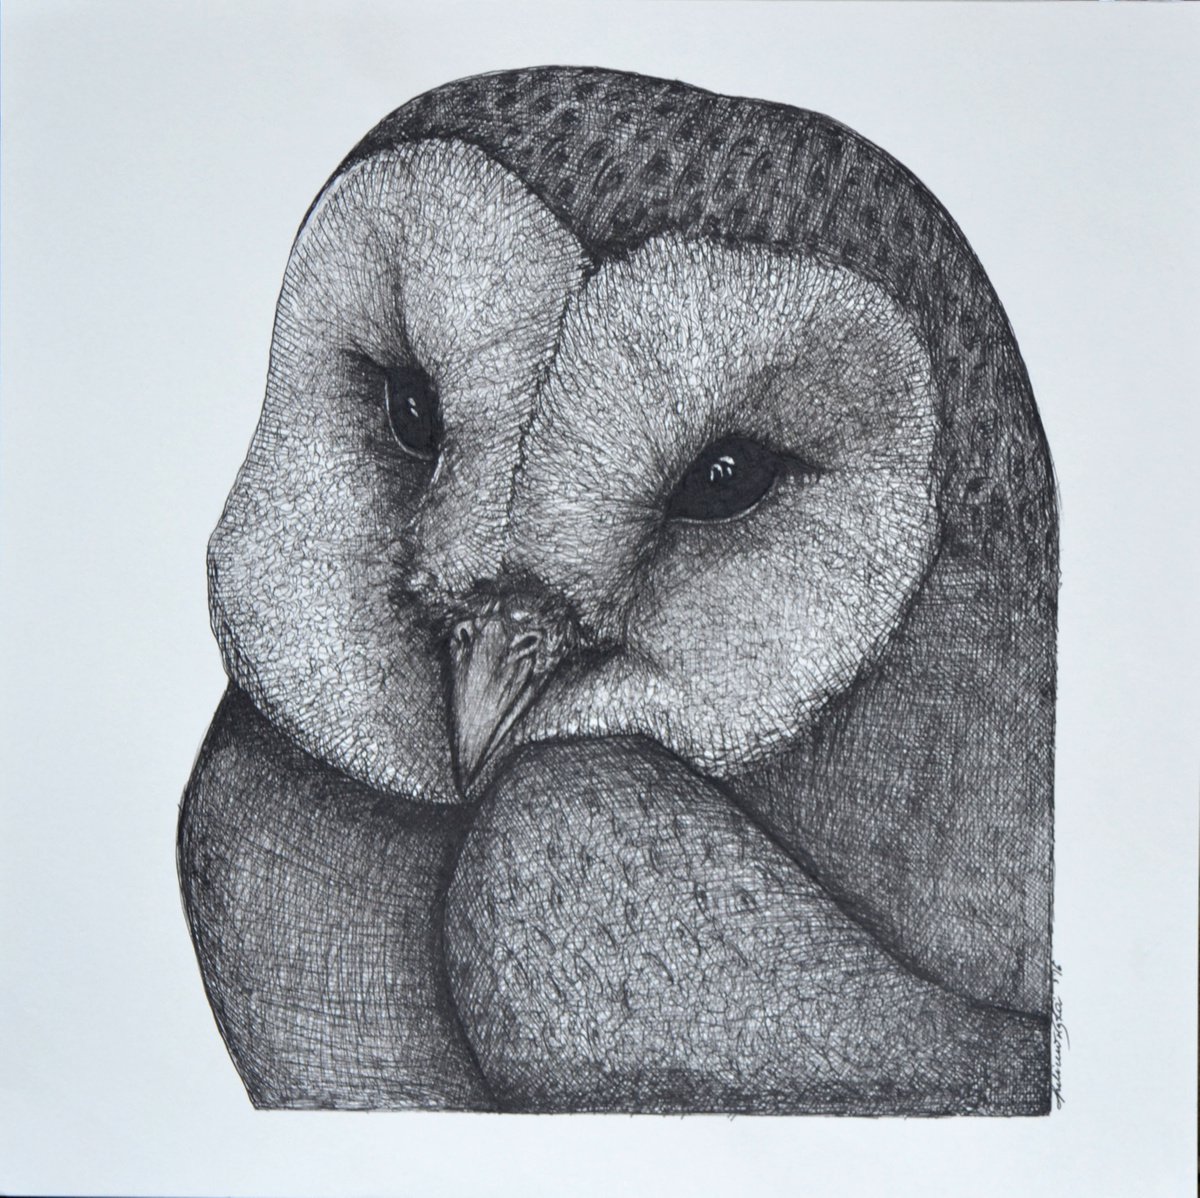 Owl #3 by Maja Tulimowska - Chmielewska